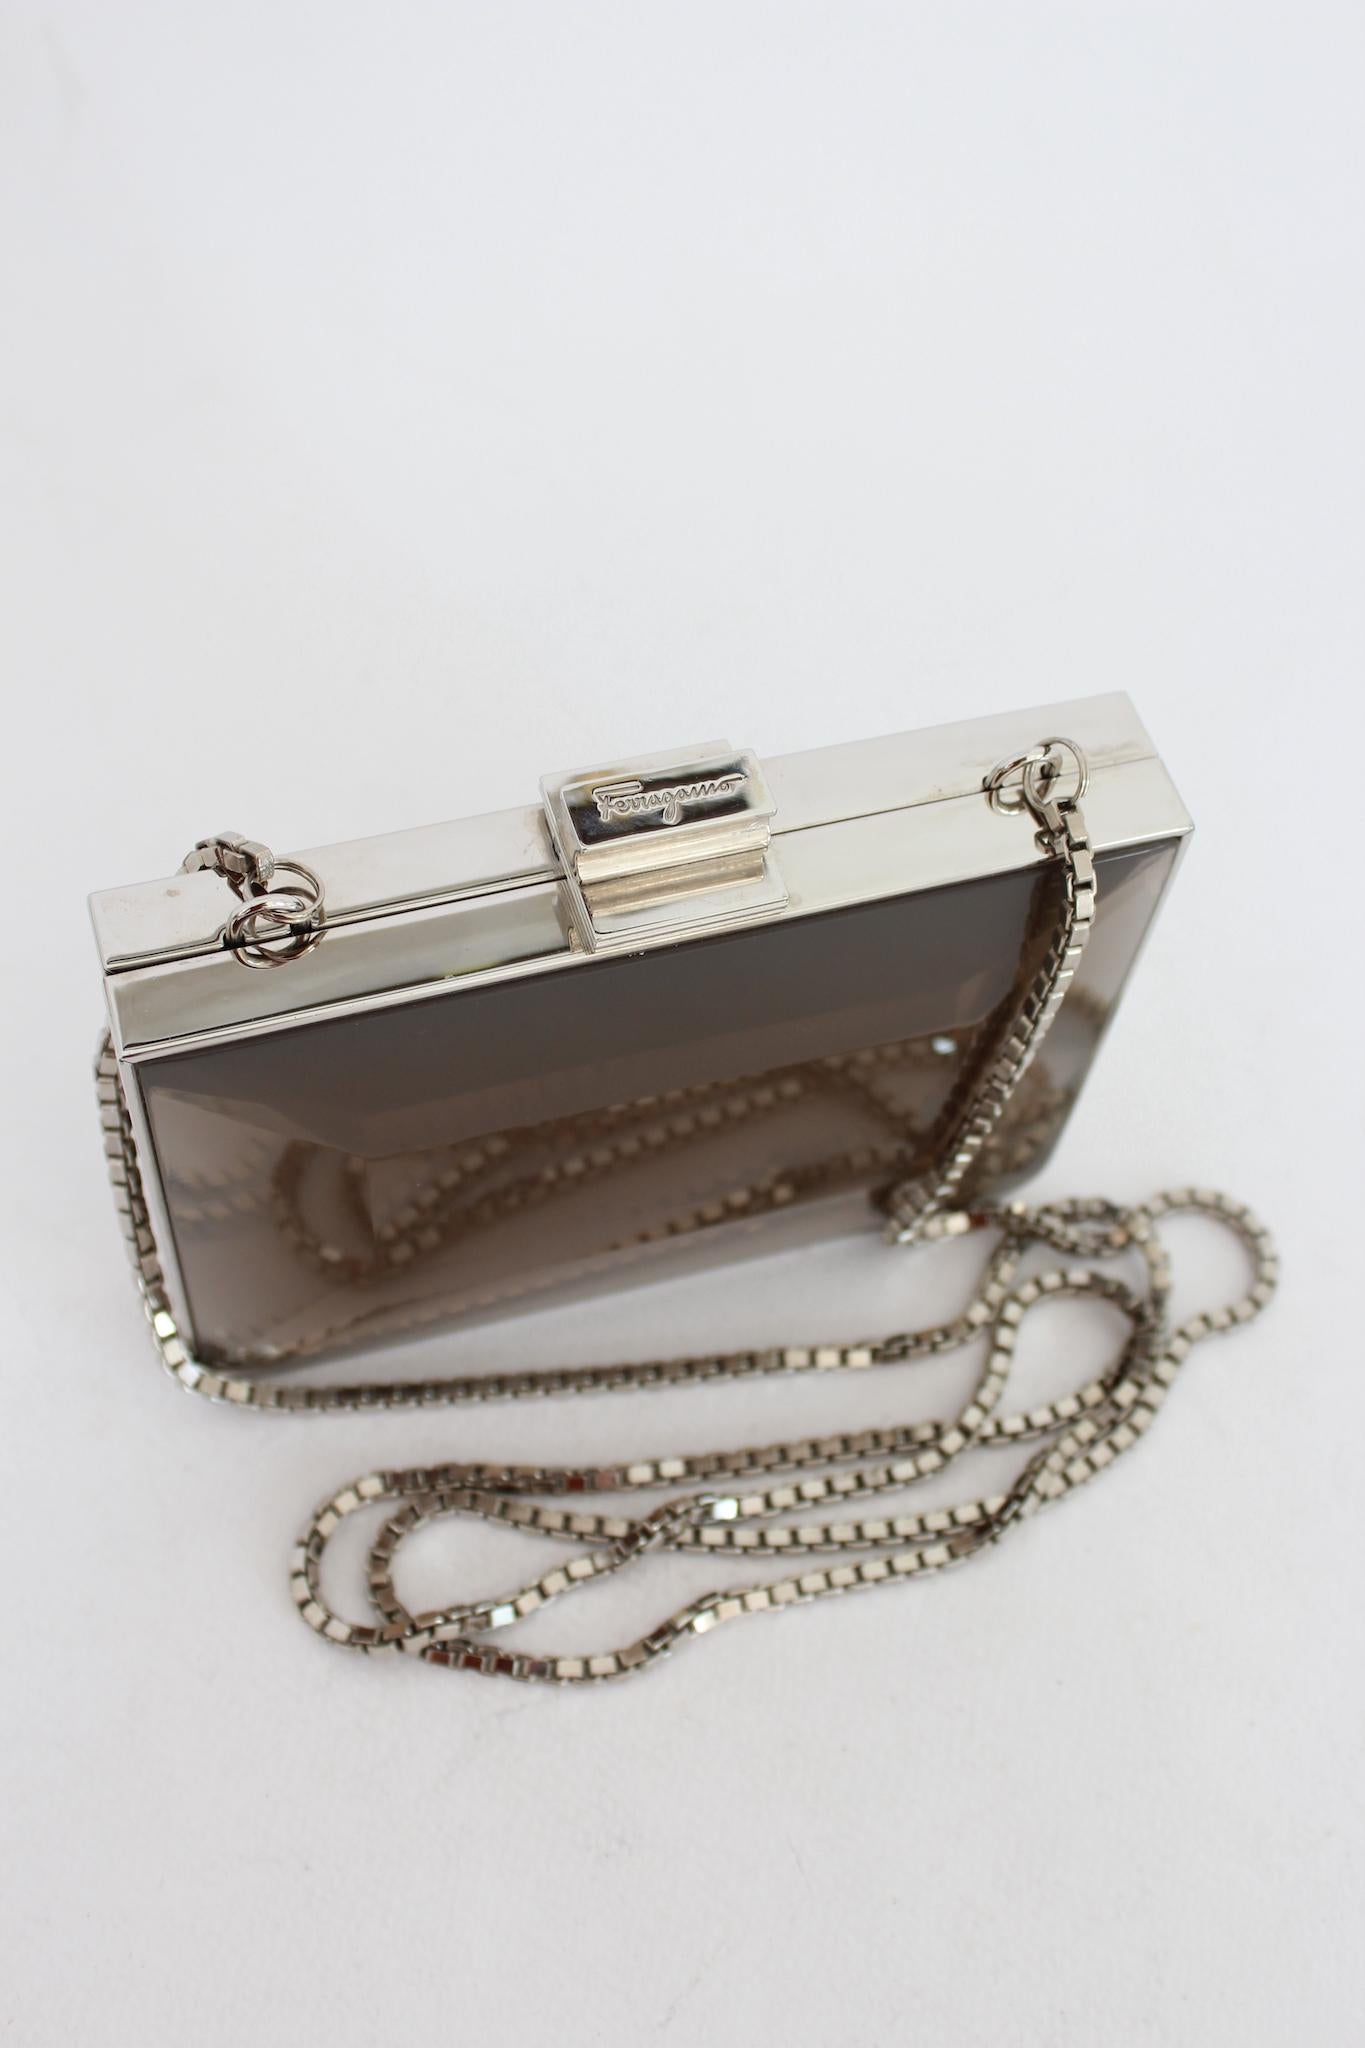 Rare Salvatore Ferragamo Metallic Mini Silver Clutch Bag Vintage 1970s 1